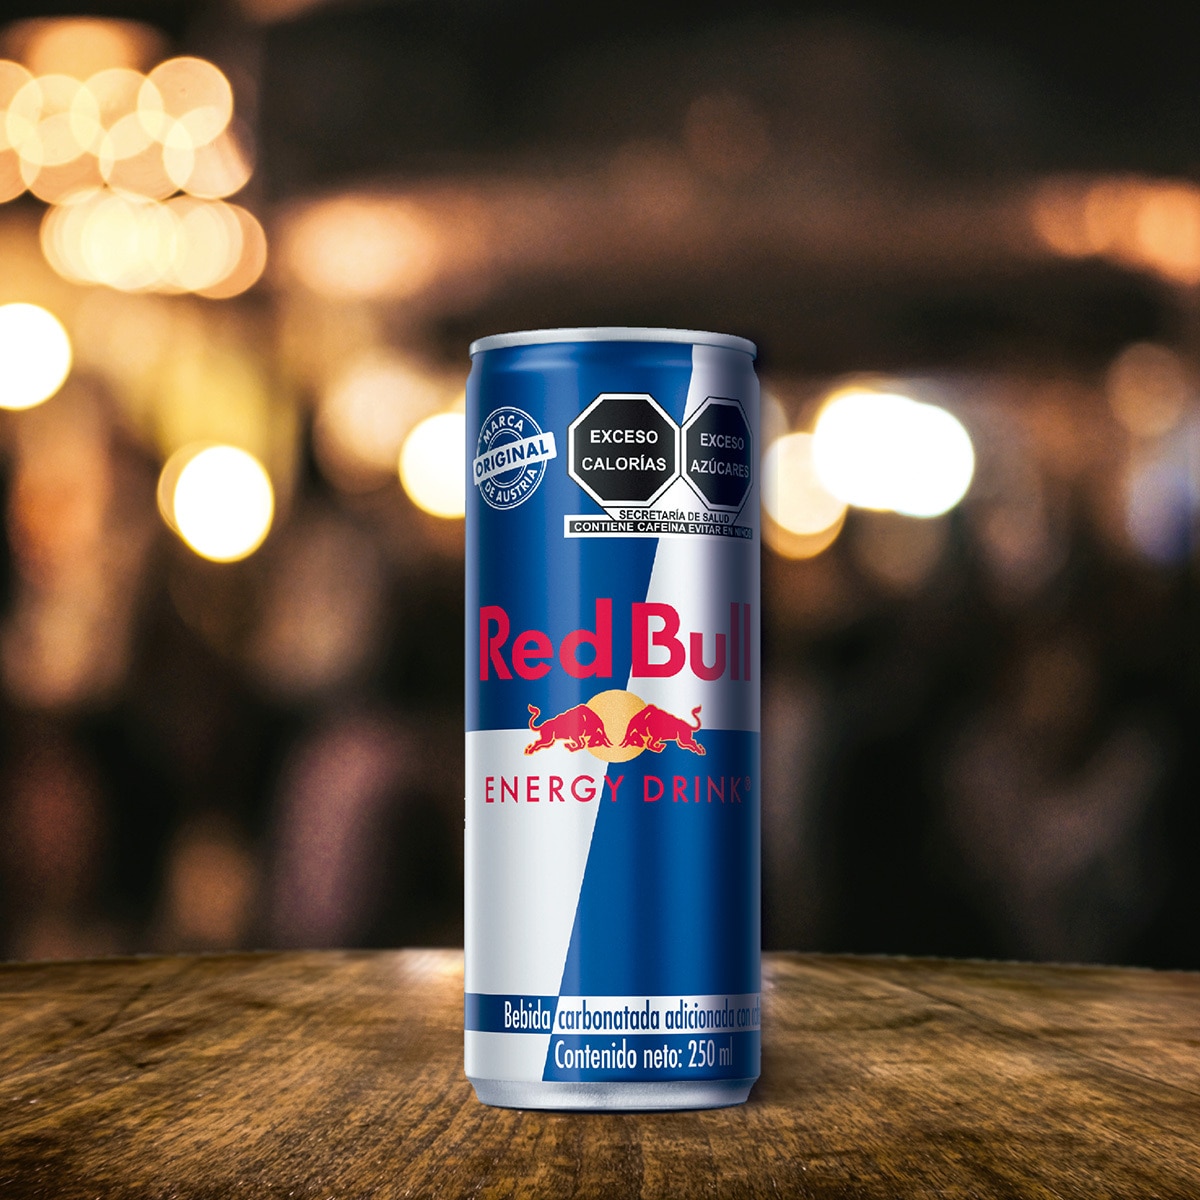 Red Bull Bebida Energética 12 pzas de 250 ml